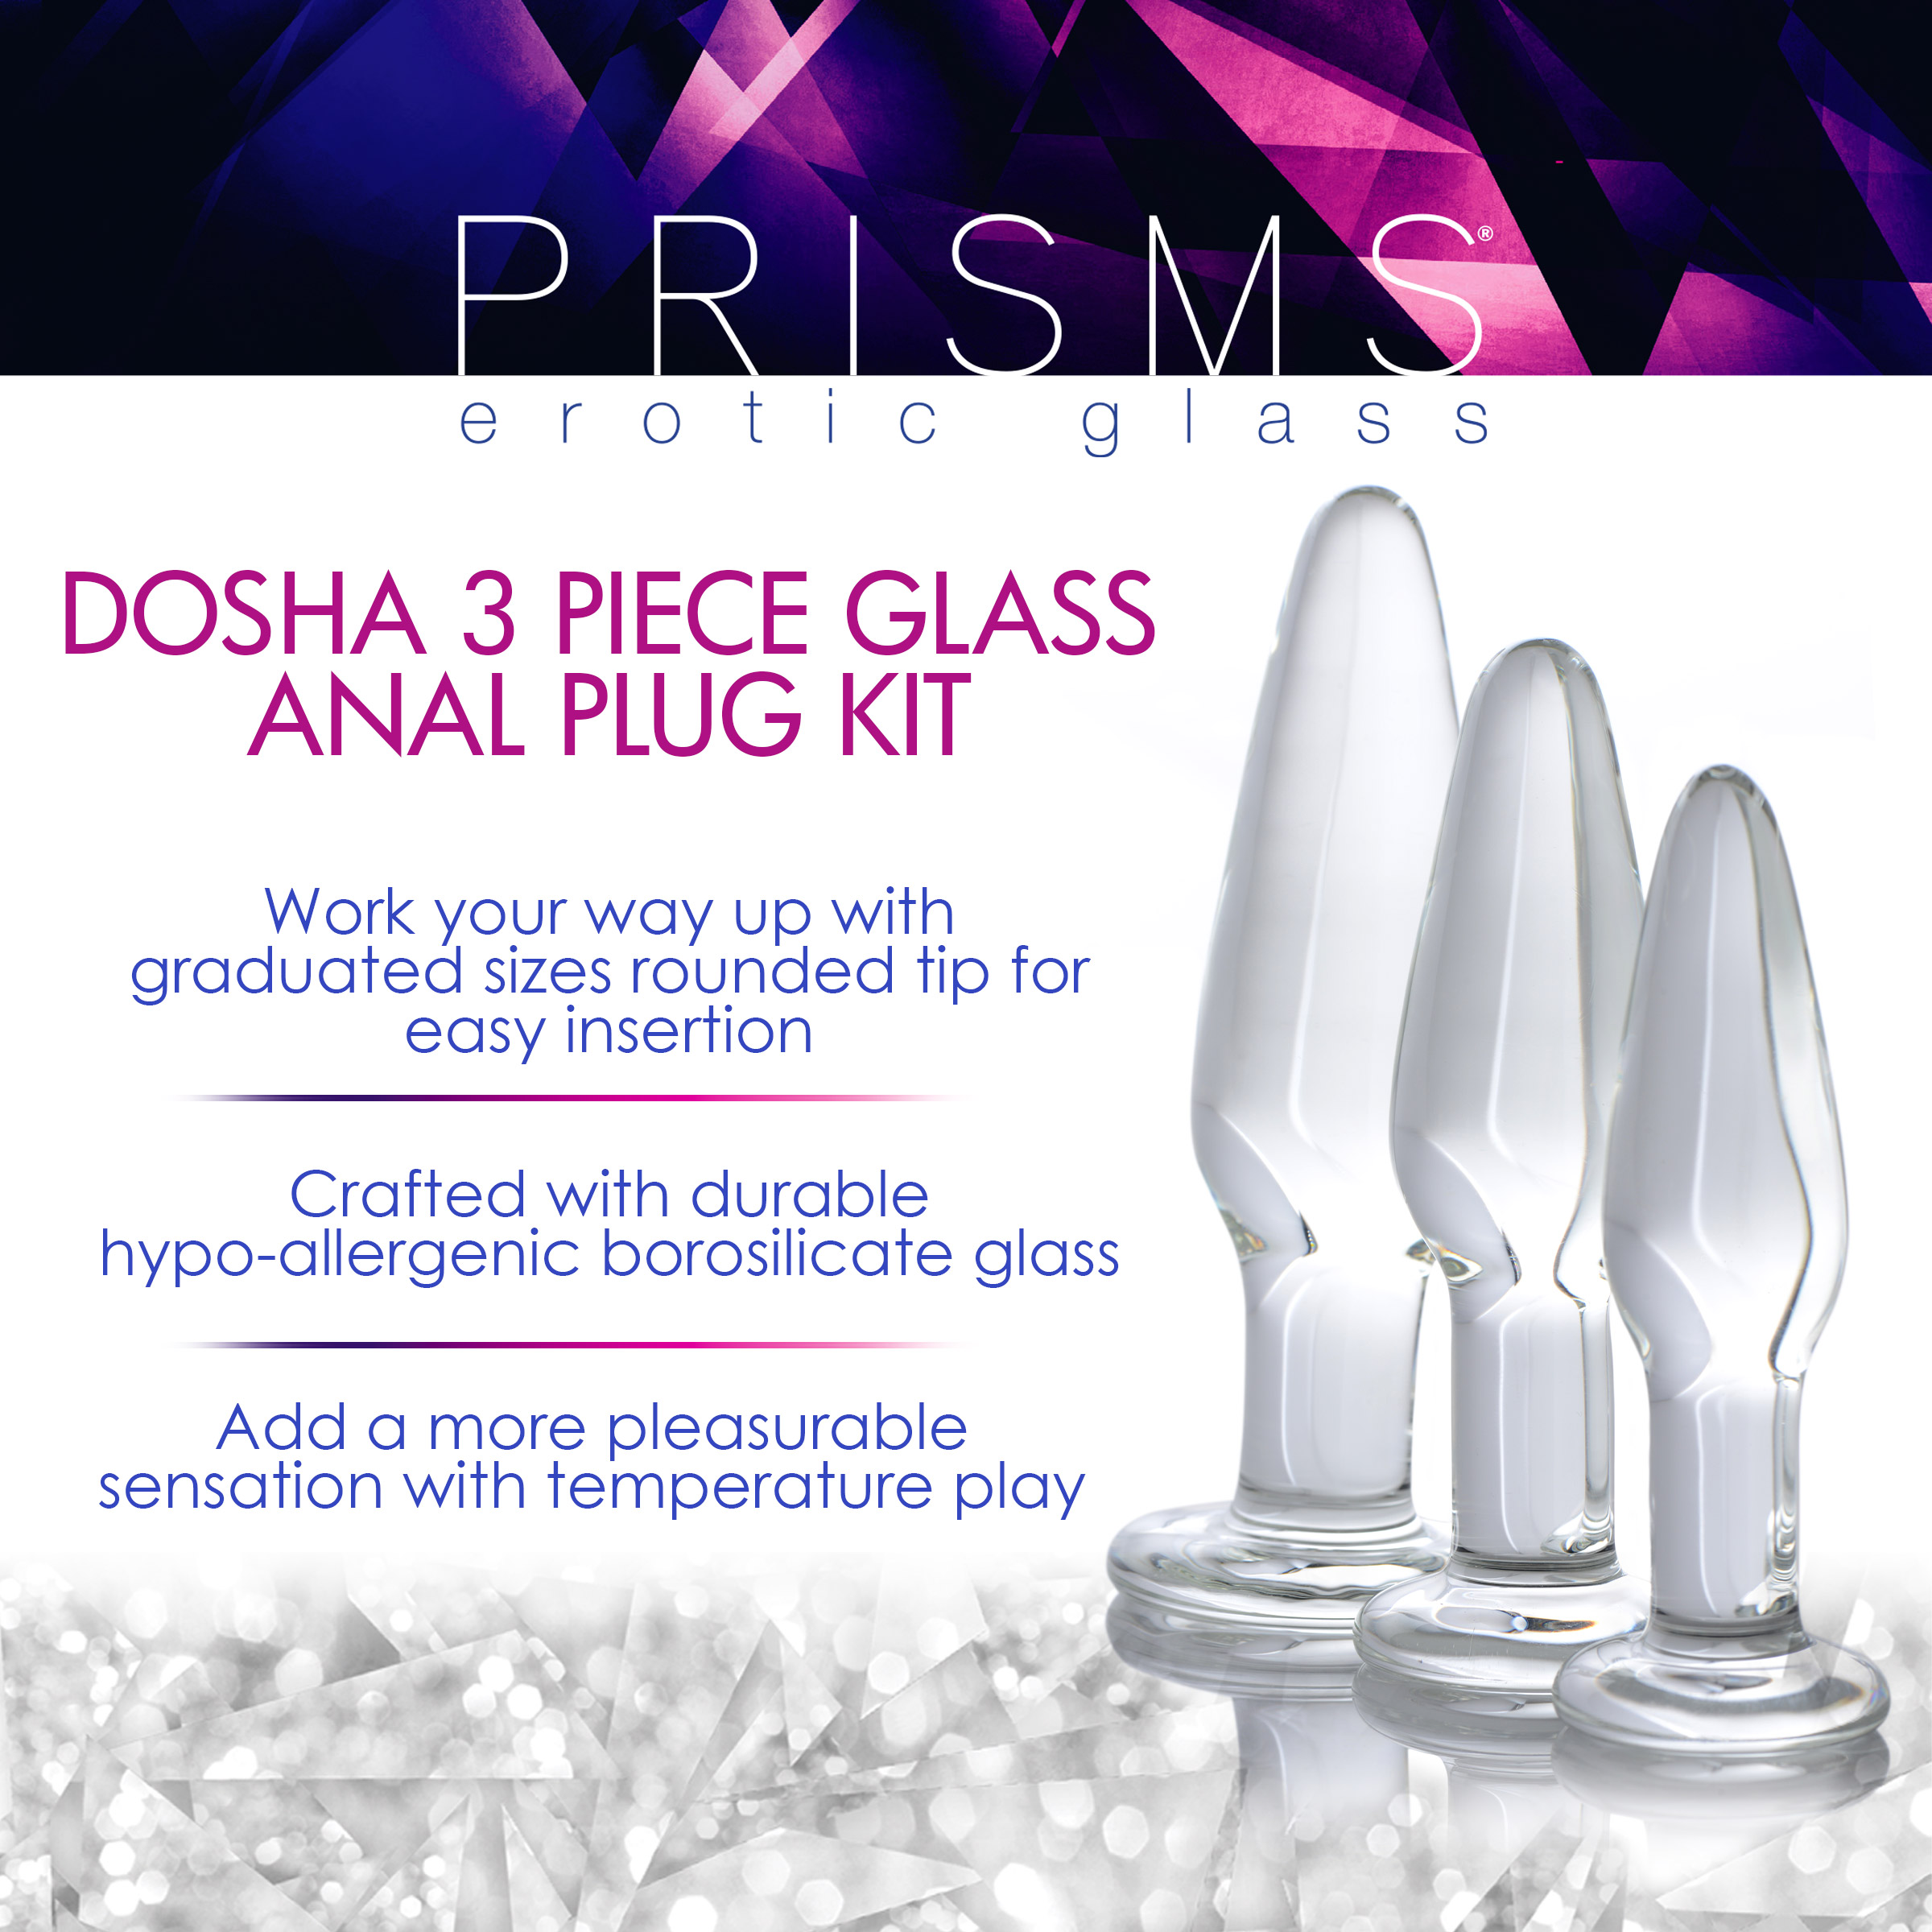 Dosha 3 Piece Glass Anal Plug Kit